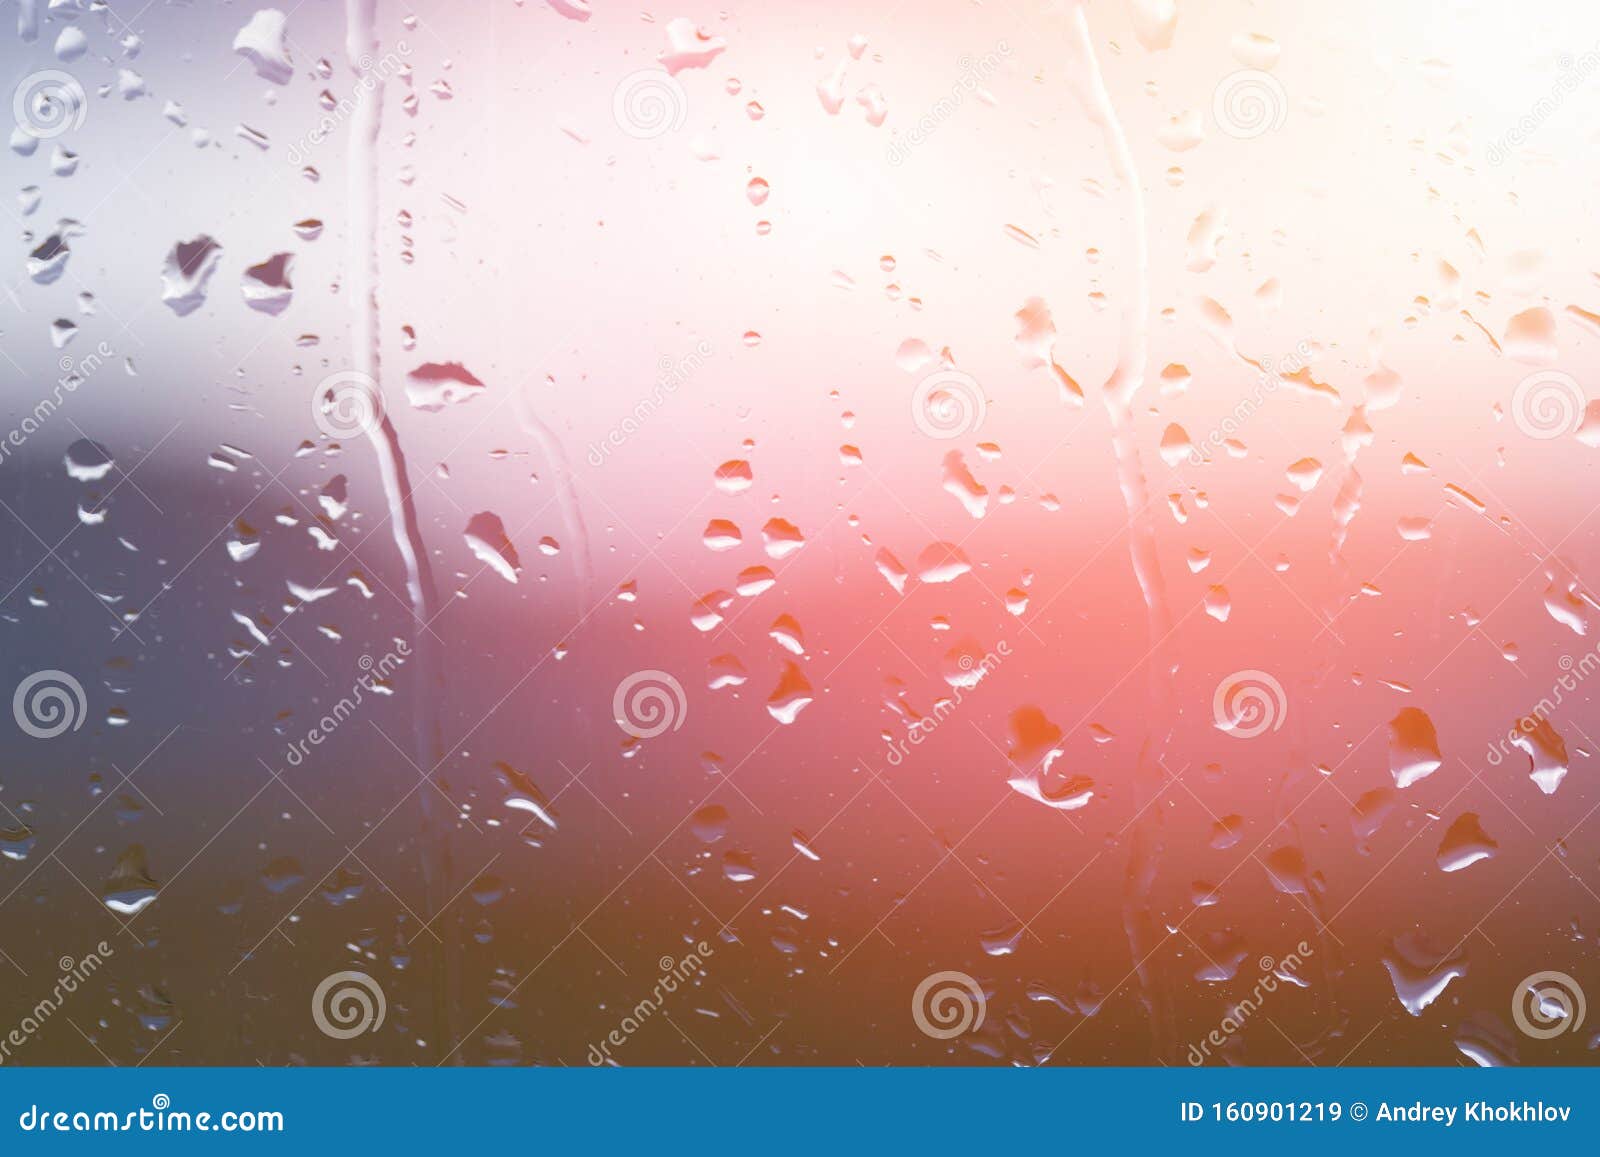 雨后窗玻璃上的水滴 背景上夕阳明显模糊田园诗般的宁静自然壁纸库存图片 图片包括有